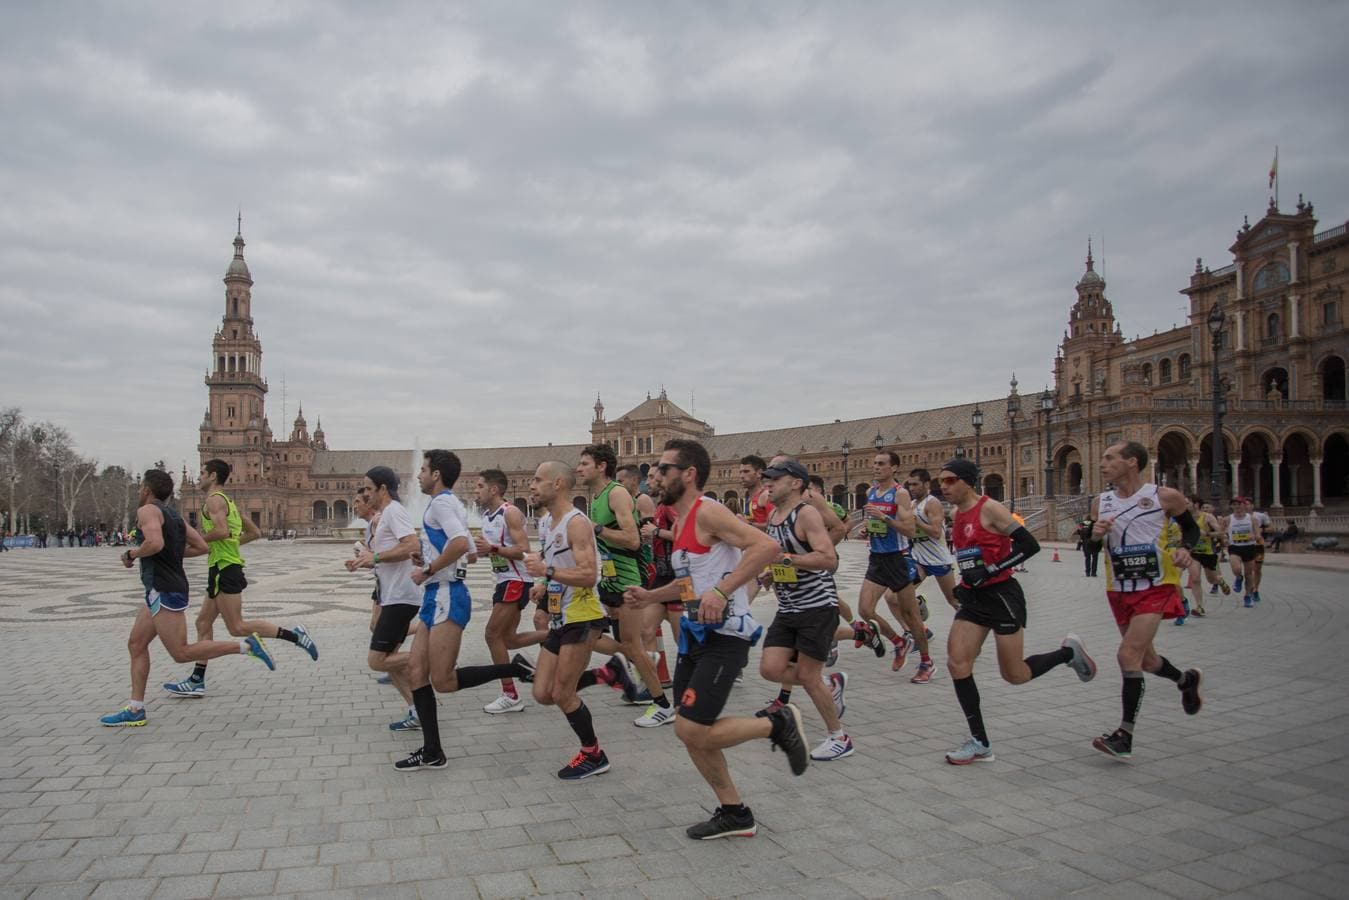 ¿Has corrido el Maratón de Sevilla? ¡Búscate aquí!